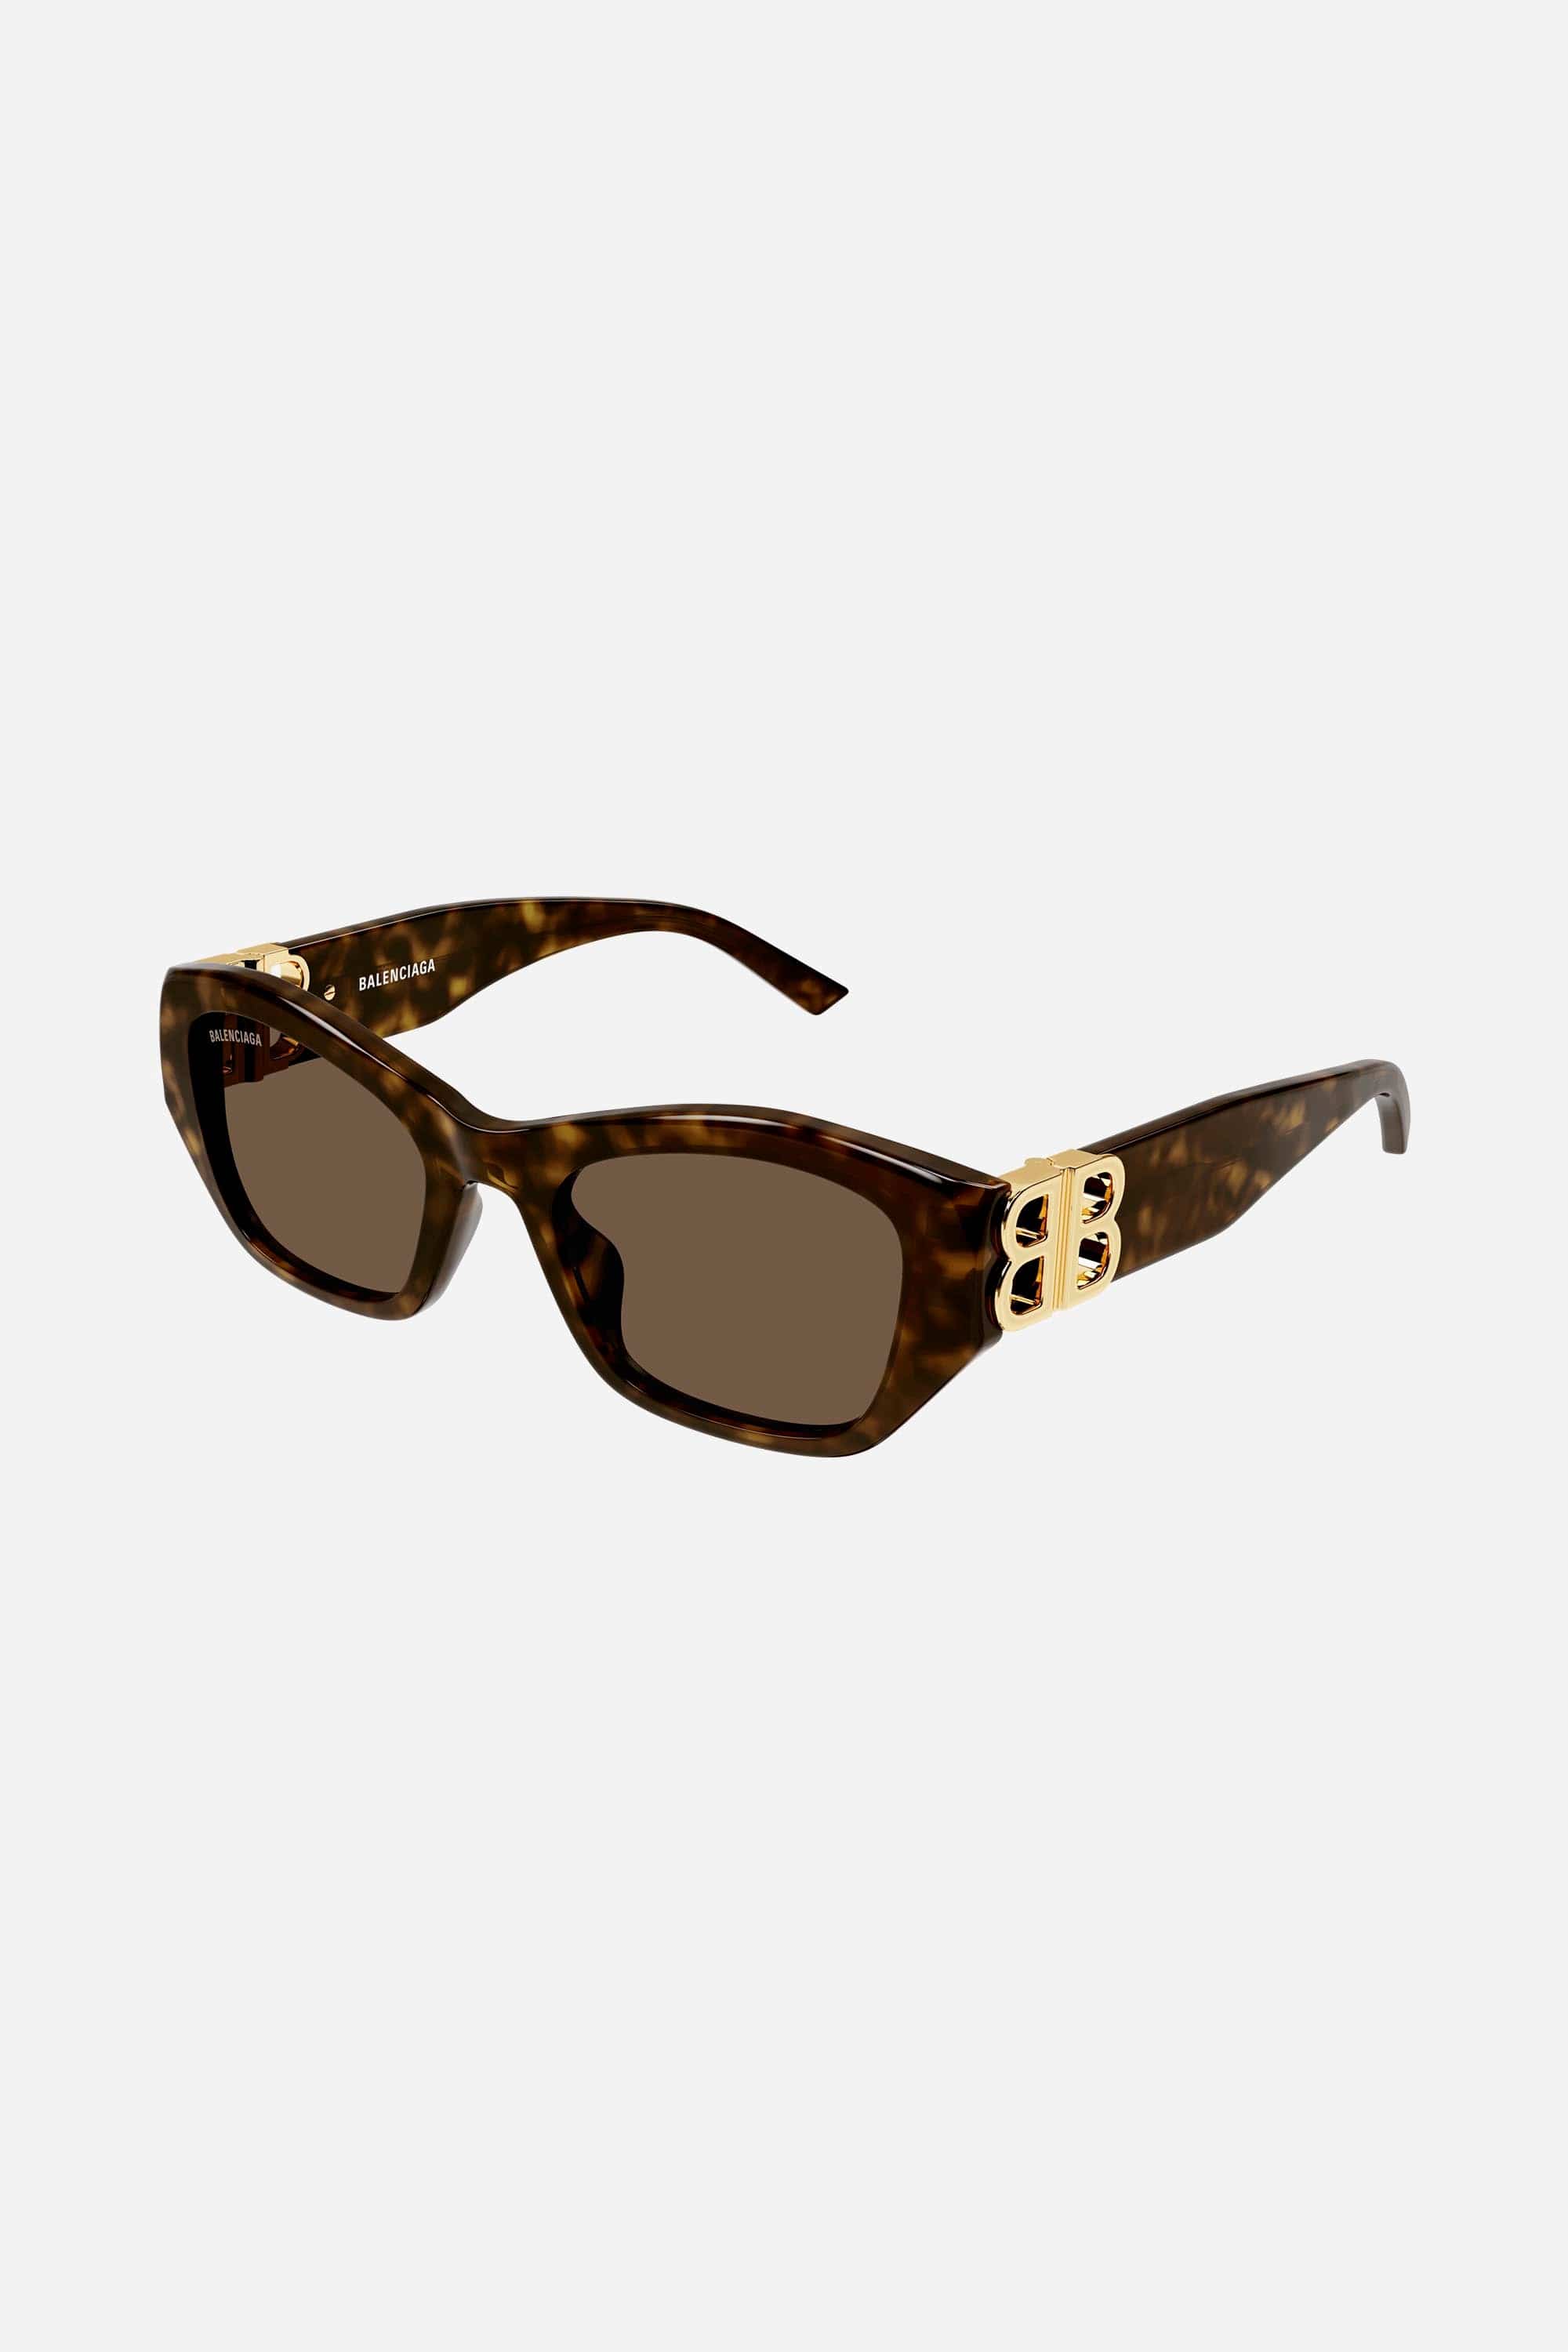 Balenciaga Dynasty cat eye havana sunglasses - Eyewear Club